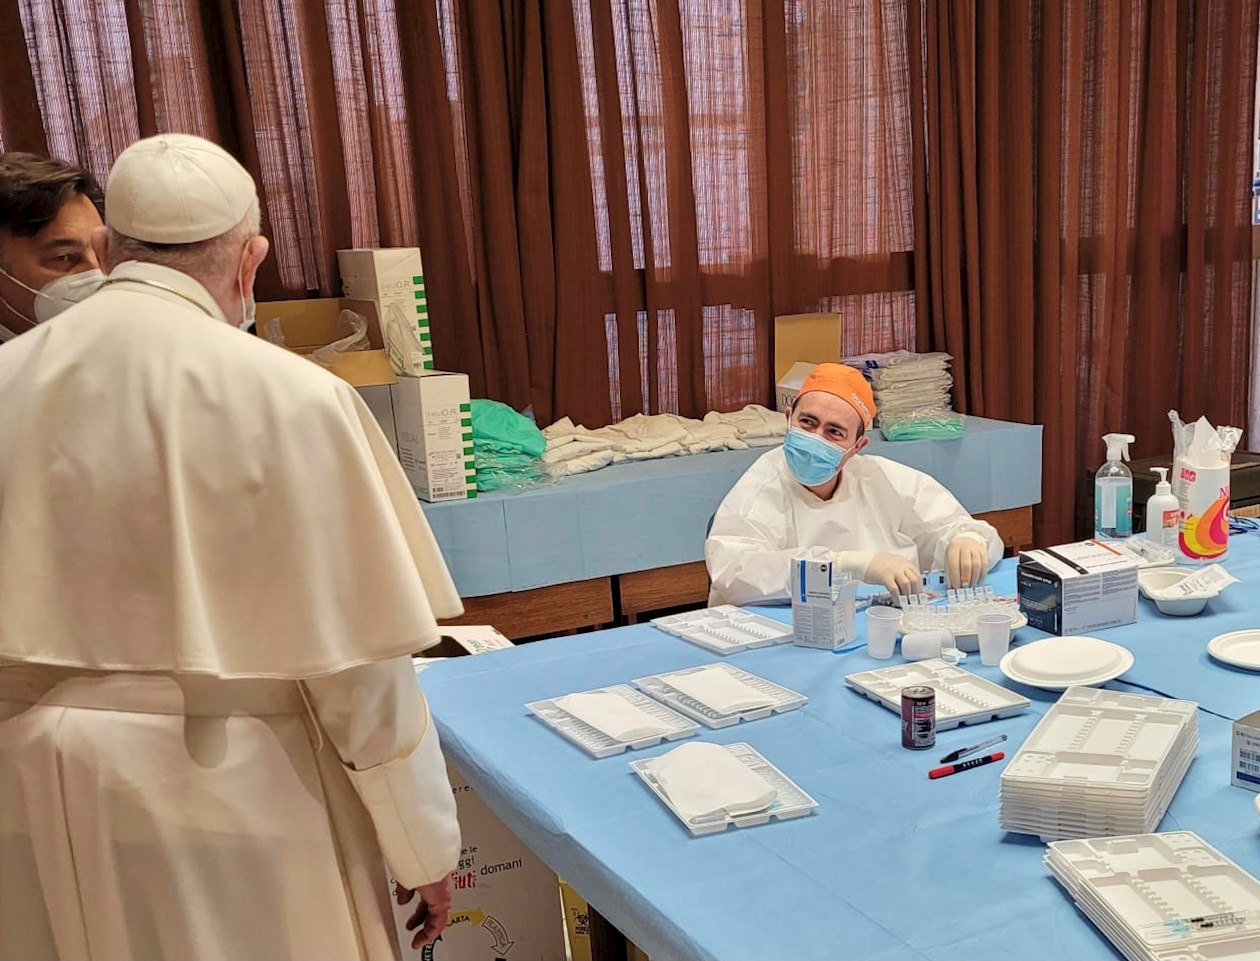 El Papa saludó al personal sanitario en el puesto de vacunación del Vaticano.